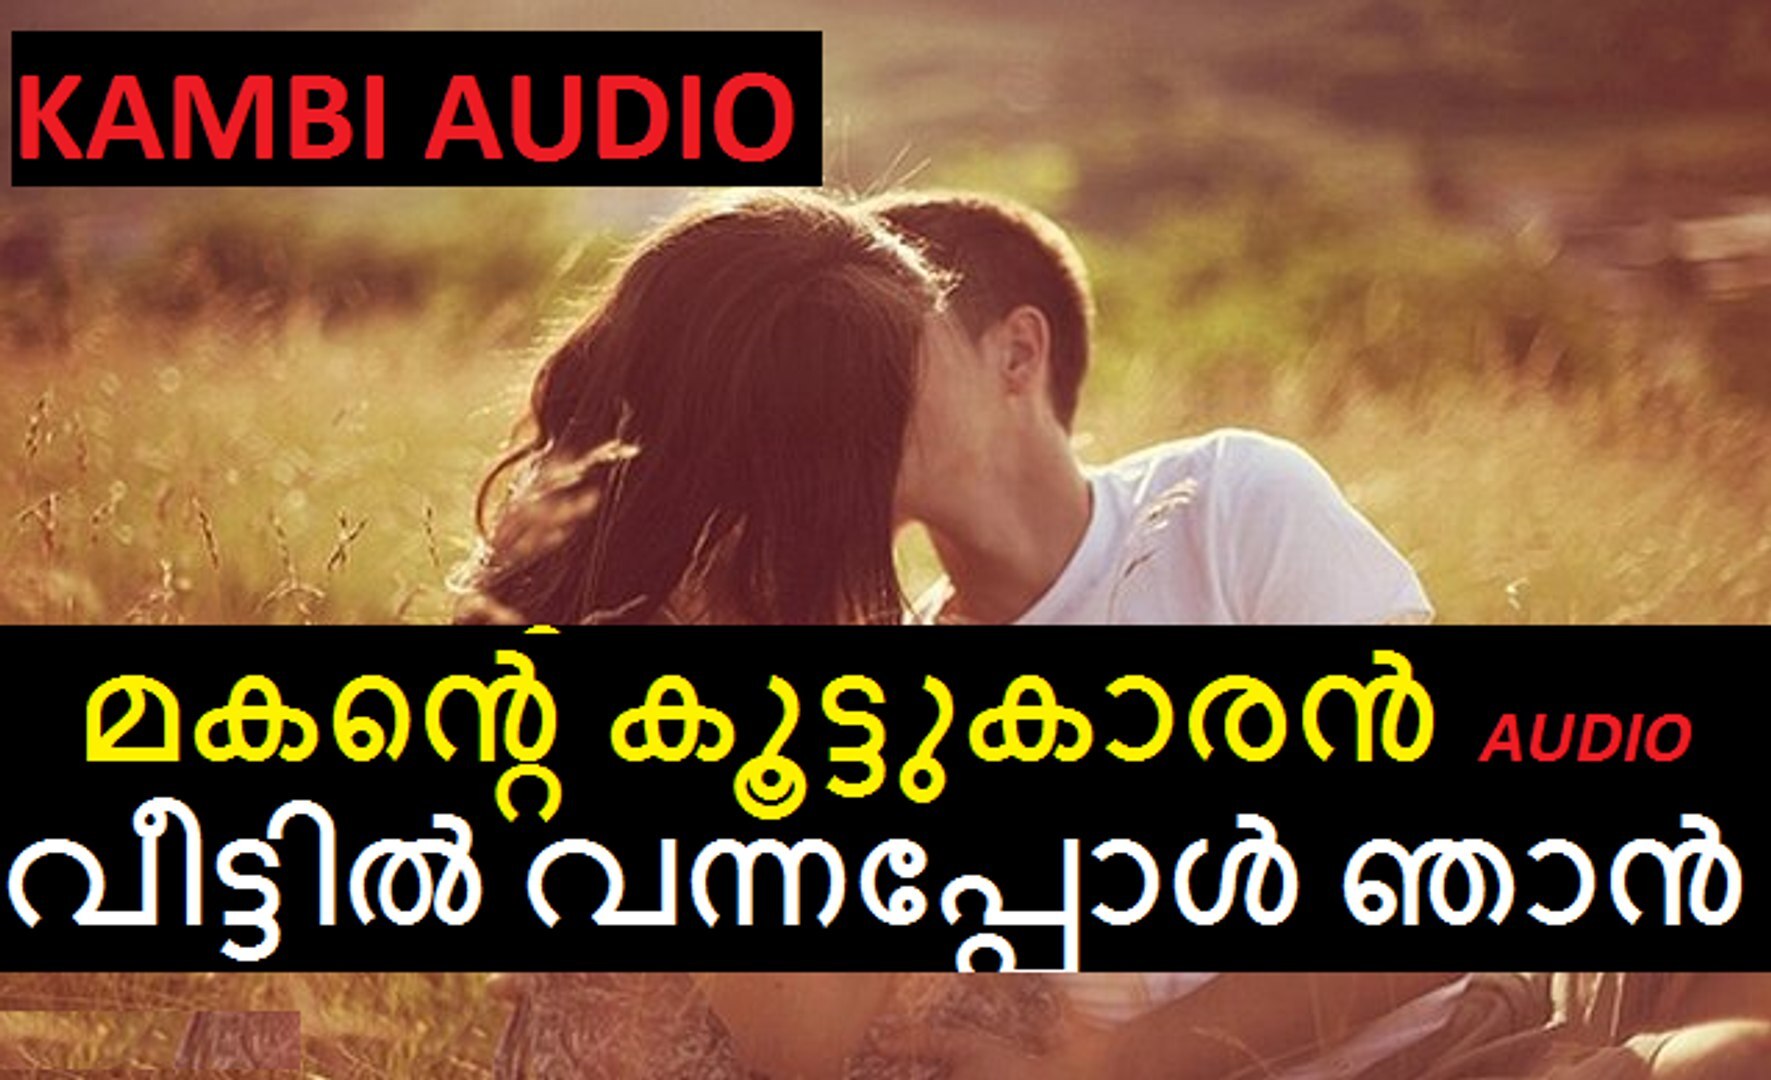 Malayalam kambi audio story